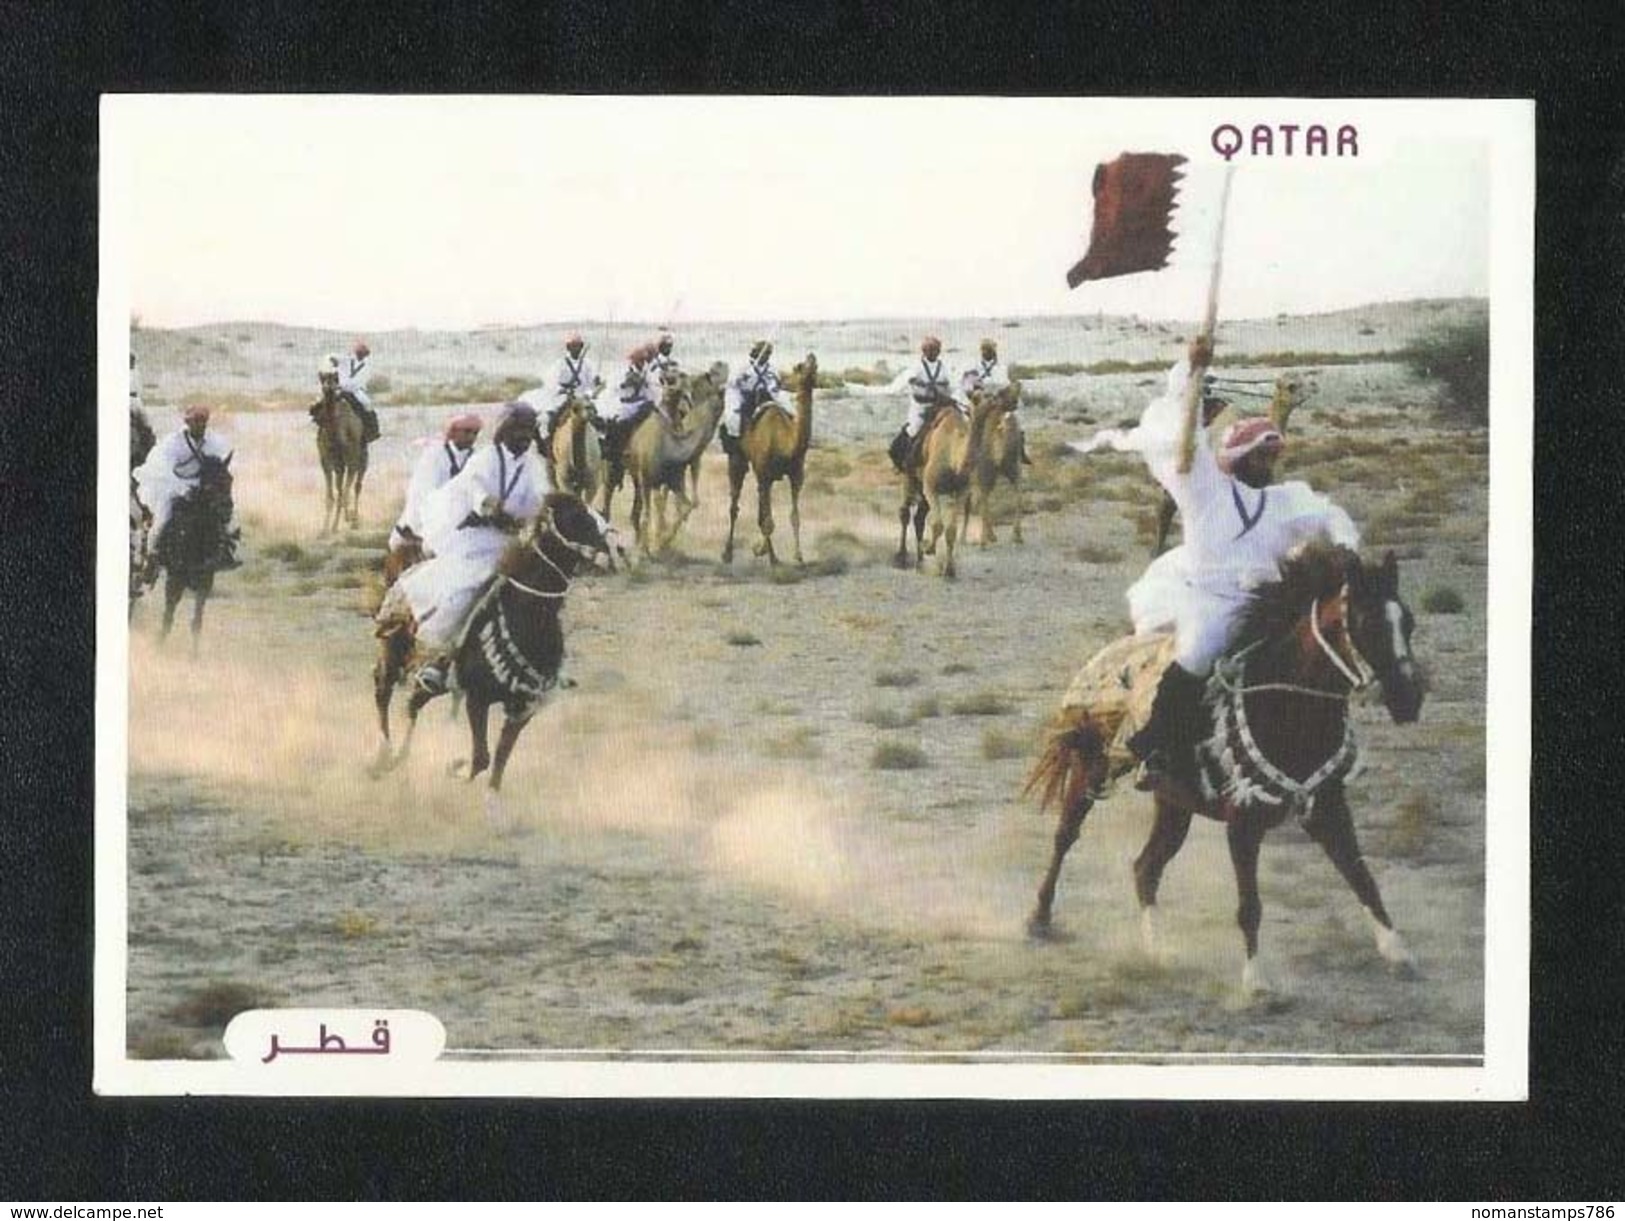 Qatar Picture Postcard Horsemanship View Card - Qatar